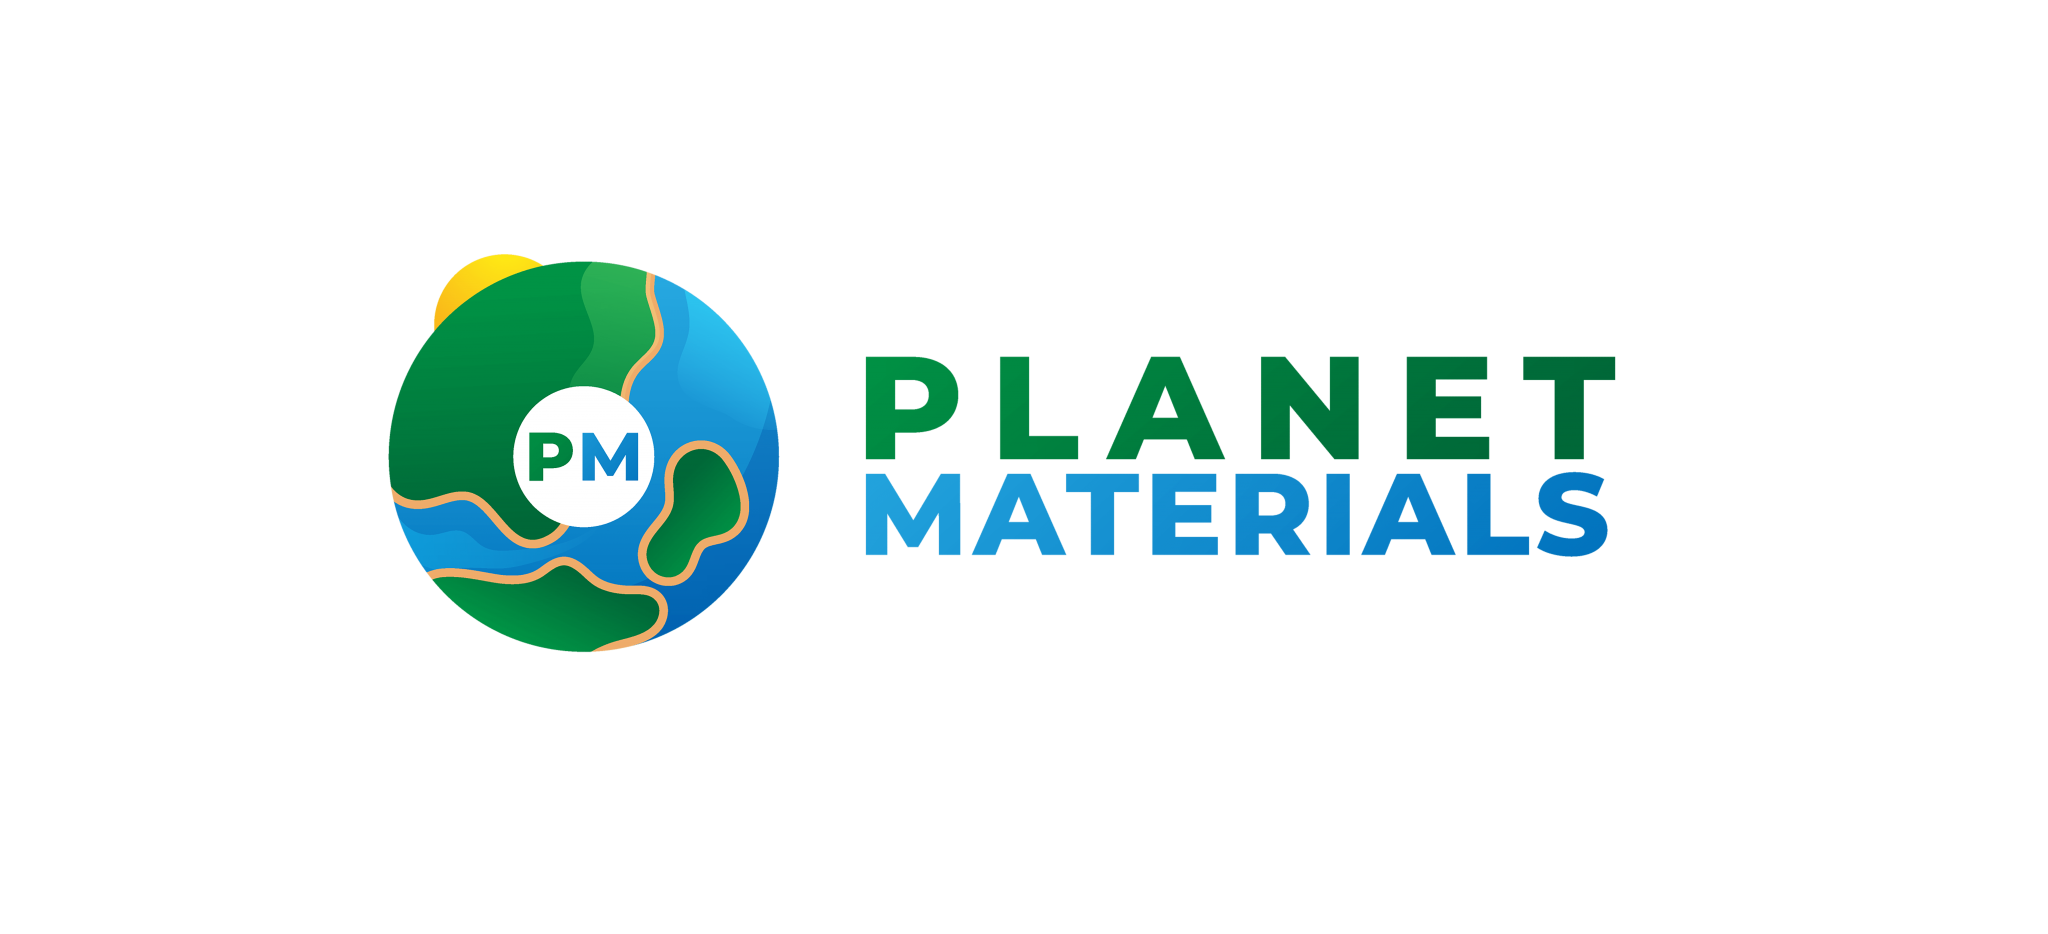 Planet-Materials-FINAL3-min